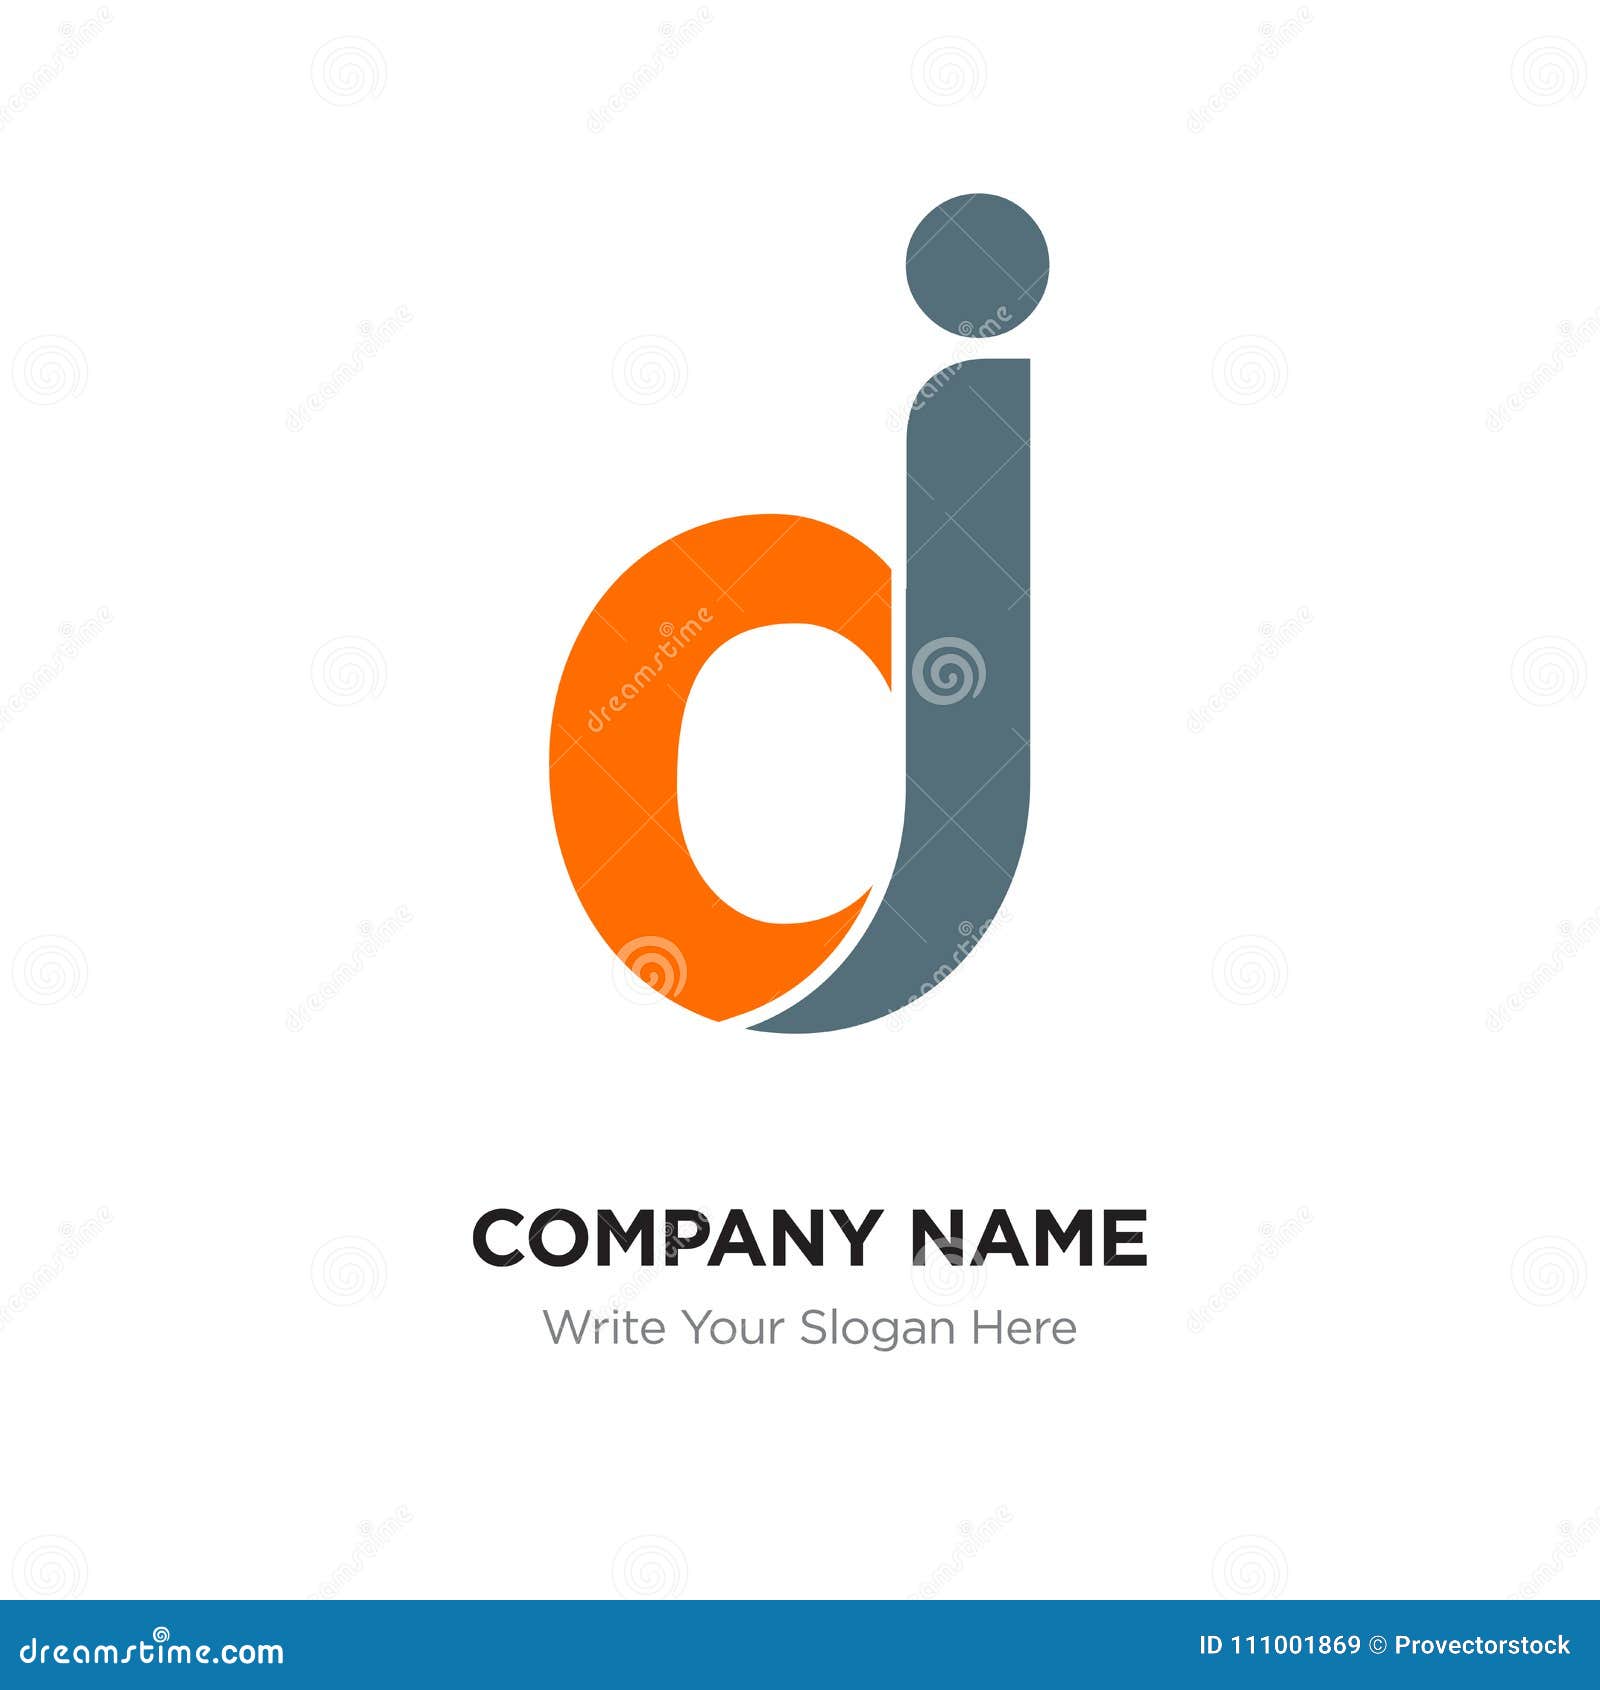 Dj Logo Design Software Logo Design Ideas